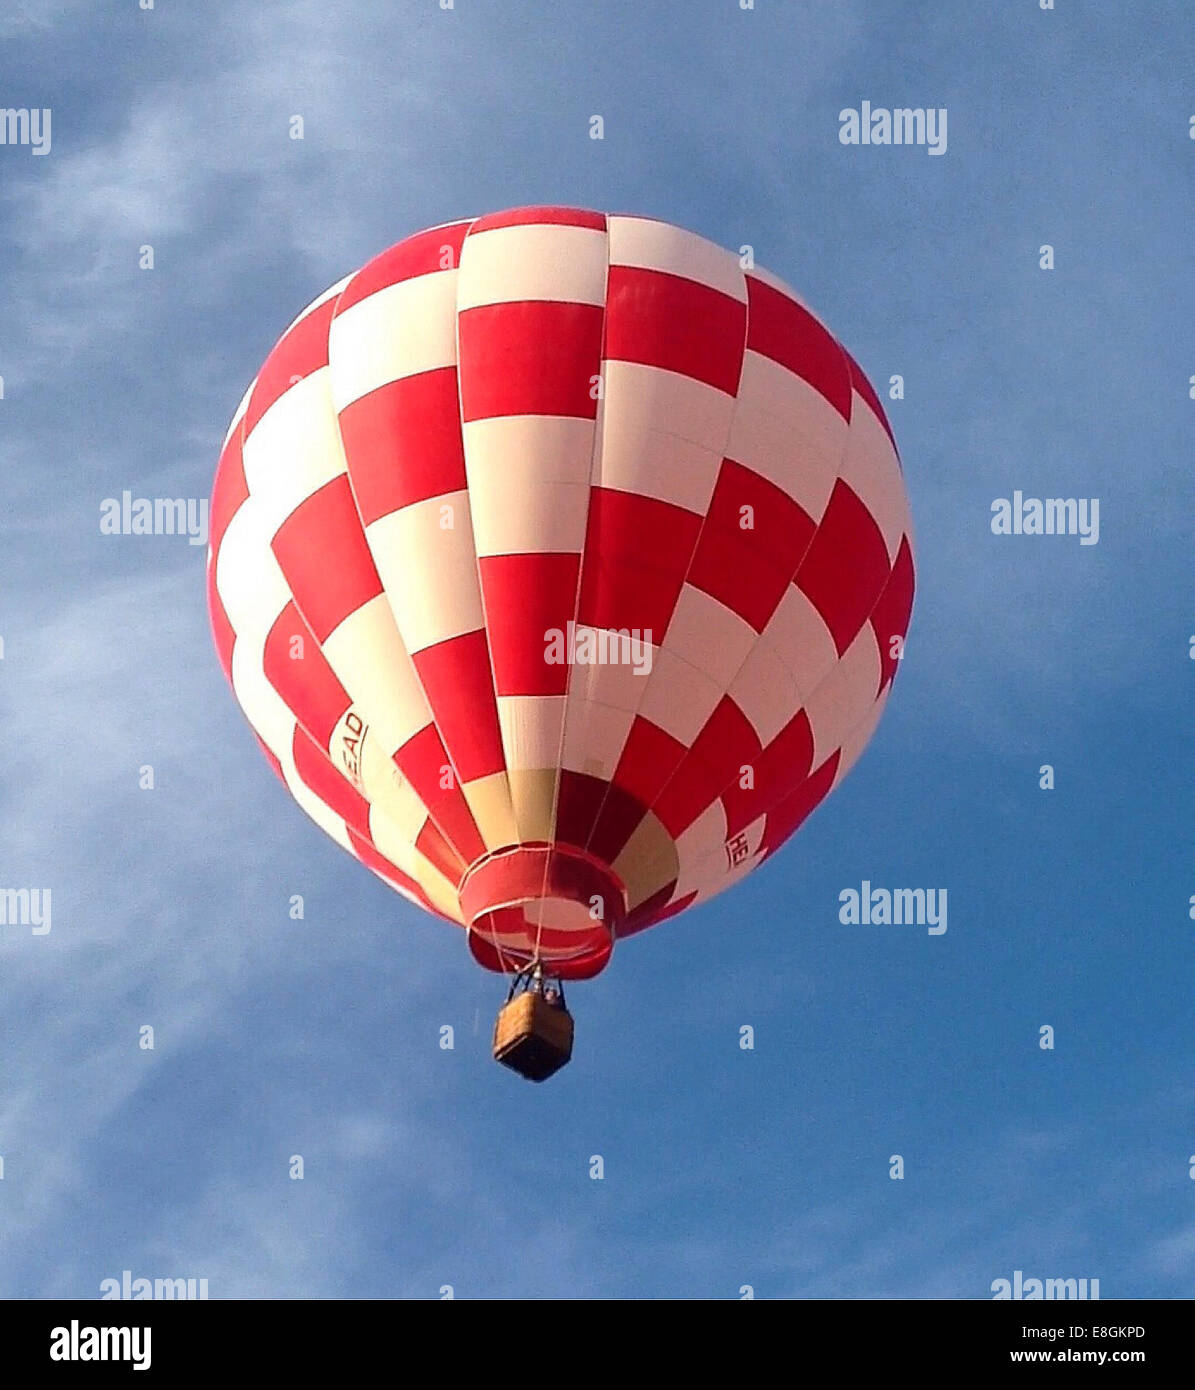 Ballon d'air chaud volant mi-vol, Texas, États-Unis Banque D'Images